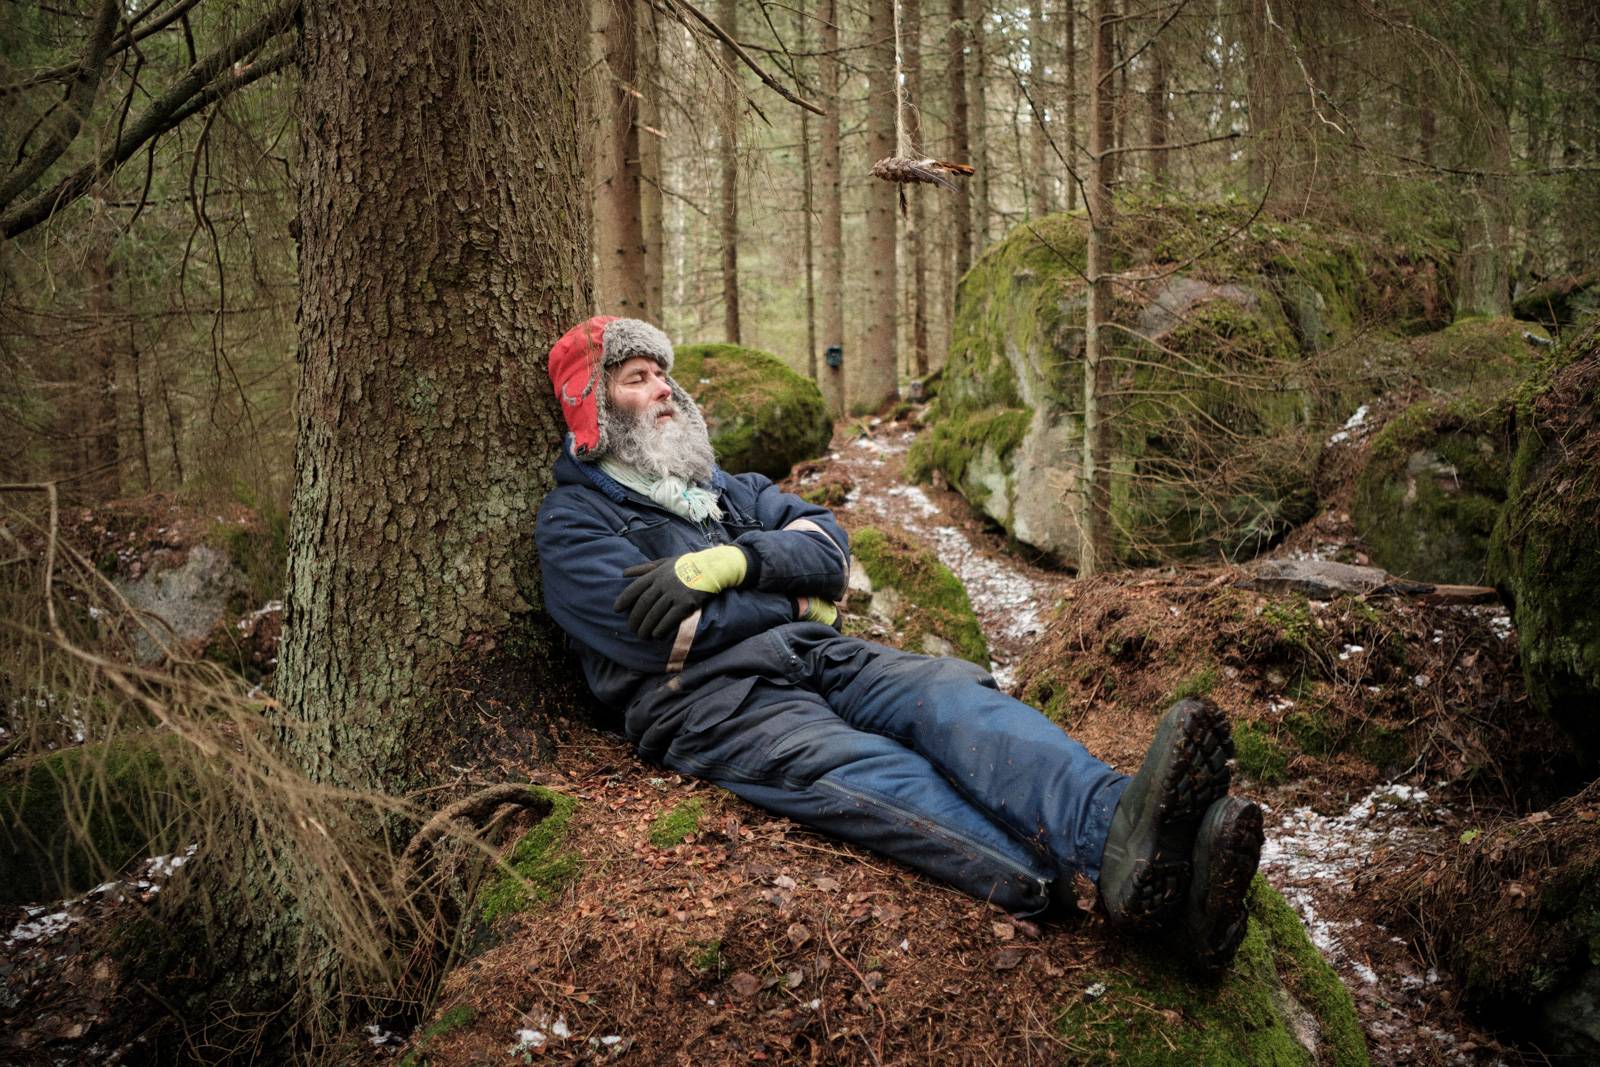 Kuva: mies lepää sankassa metsässä istuen ja nojaten puun runkoon. Copyright: Alexander Lembke.